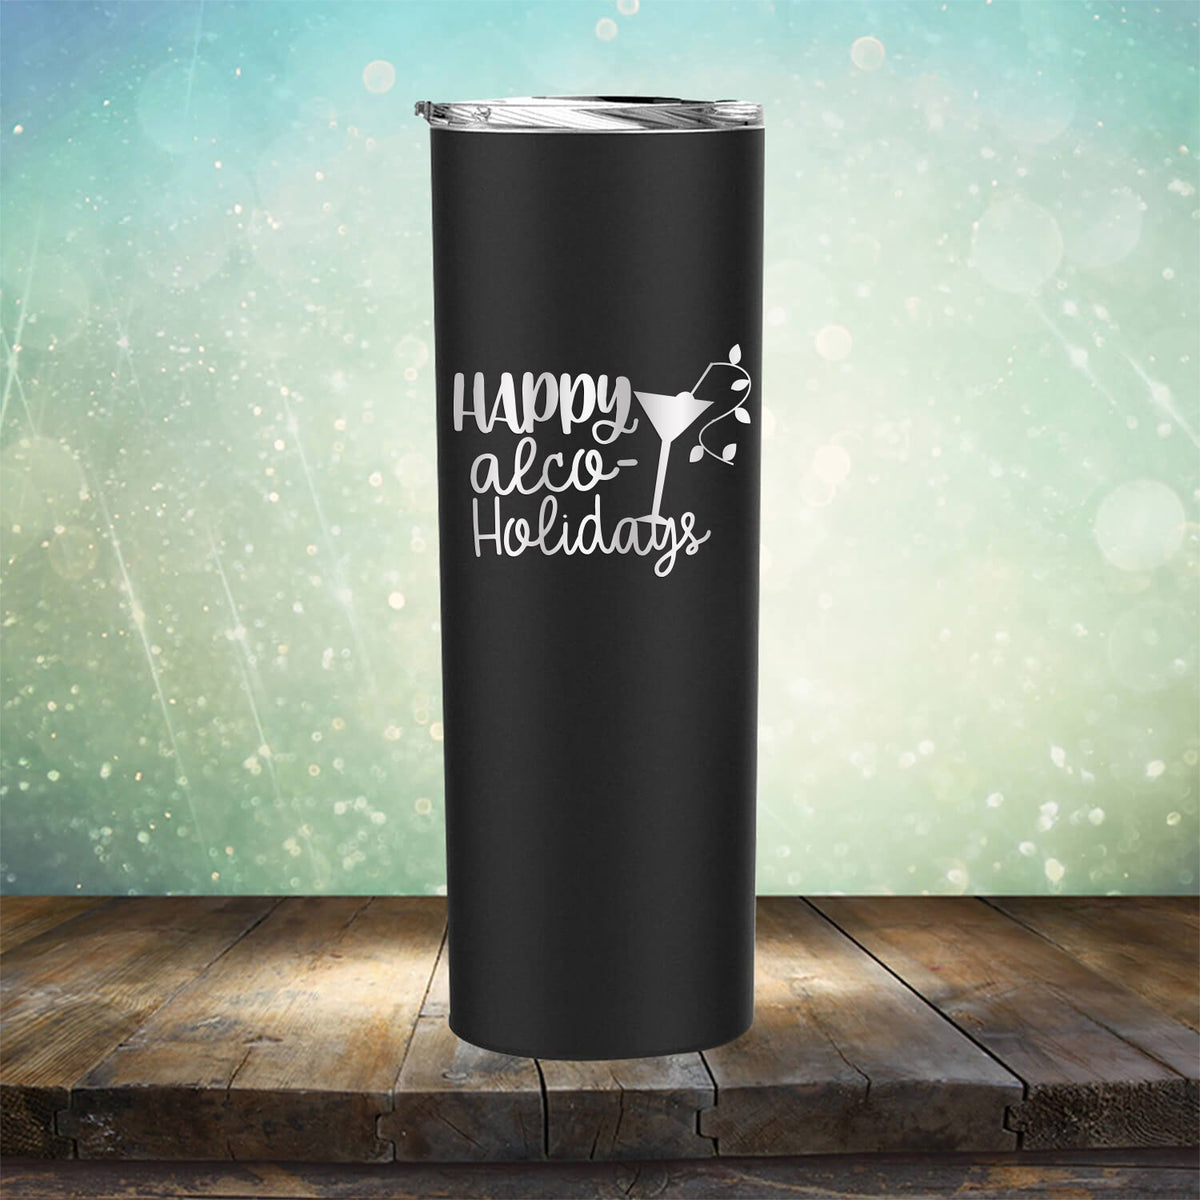 Happy Alco Holidays - Laser Etched Tumbler Mug